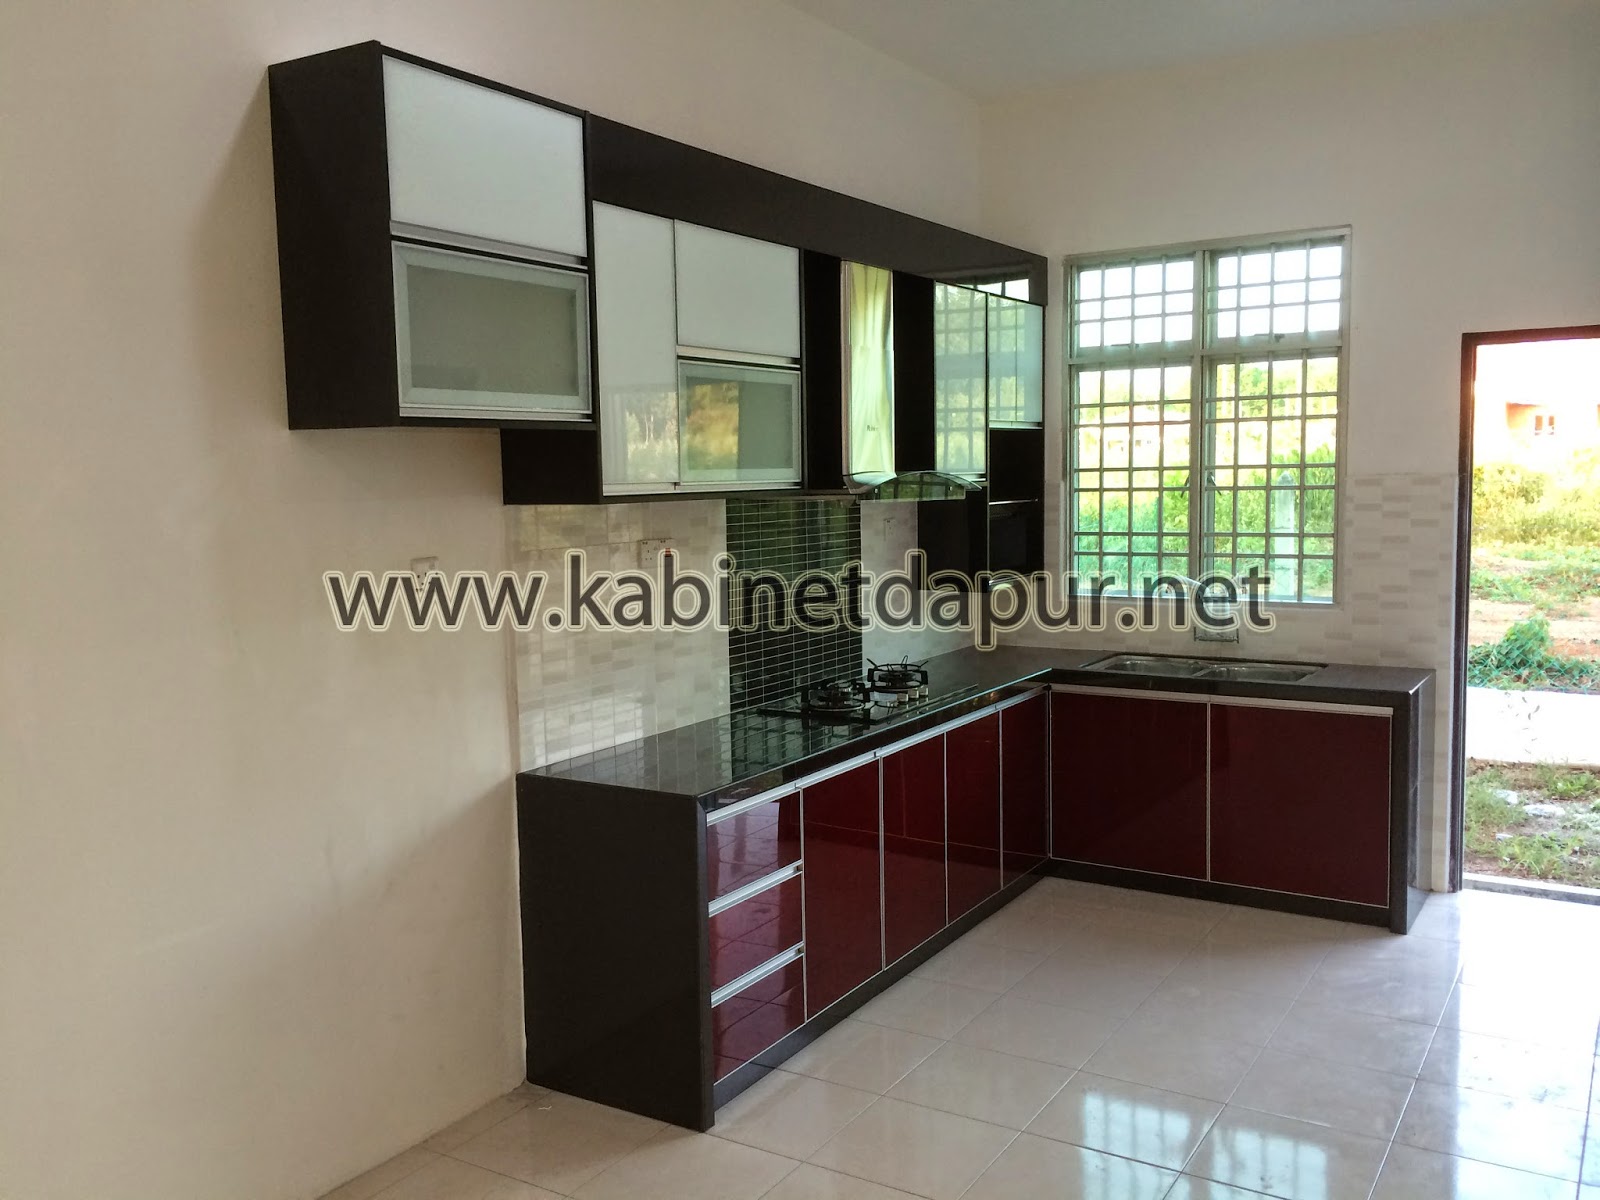 Desain Kabinet Dapur Rumah Flat  Furniturumah